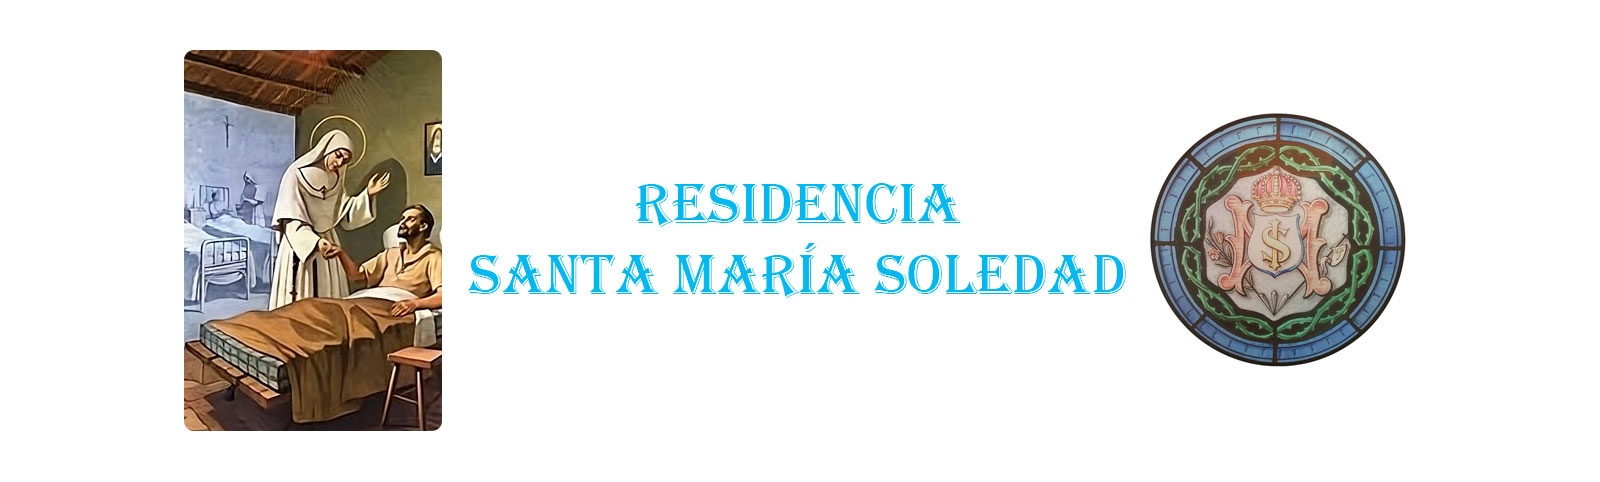 RESIDENCIA SANTA MARIA SOLEDAD SIERVAS DE MARÍA